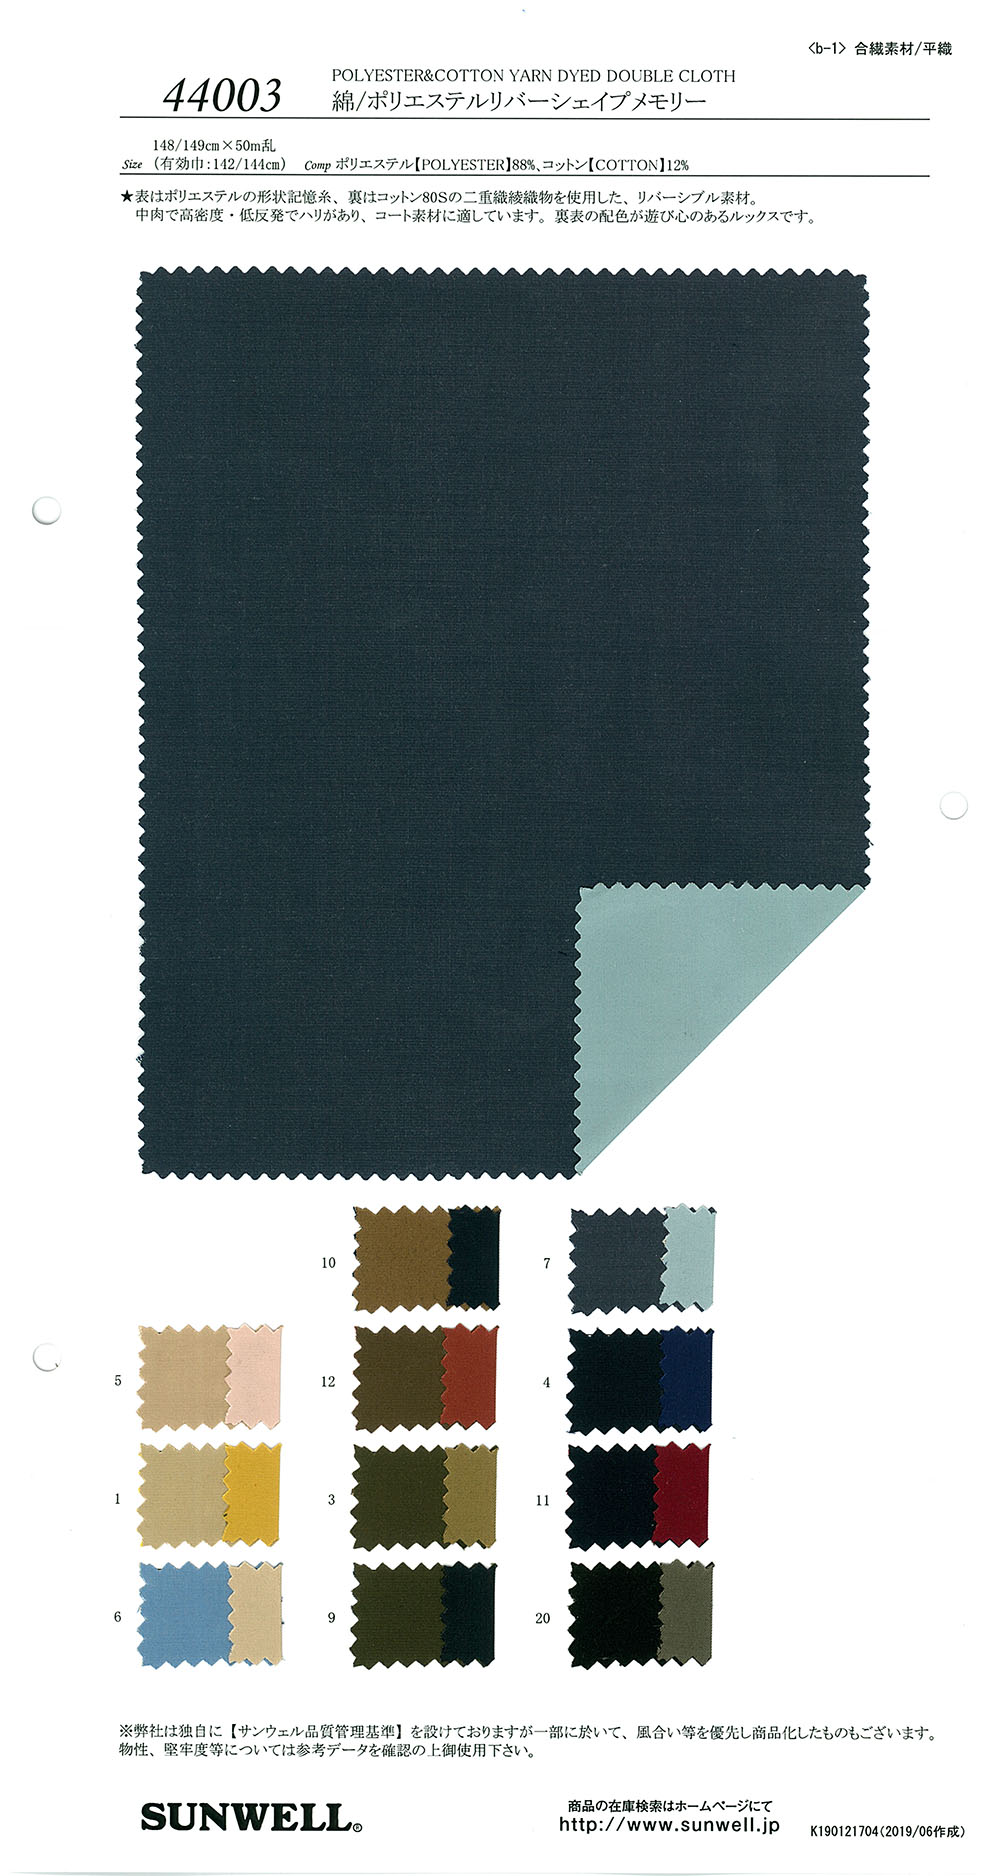 44003 Bộ Nhớ Hình Dạng Dệt River Cotton / Polyester[Vải] SUNWELL ( Giếng Trời )